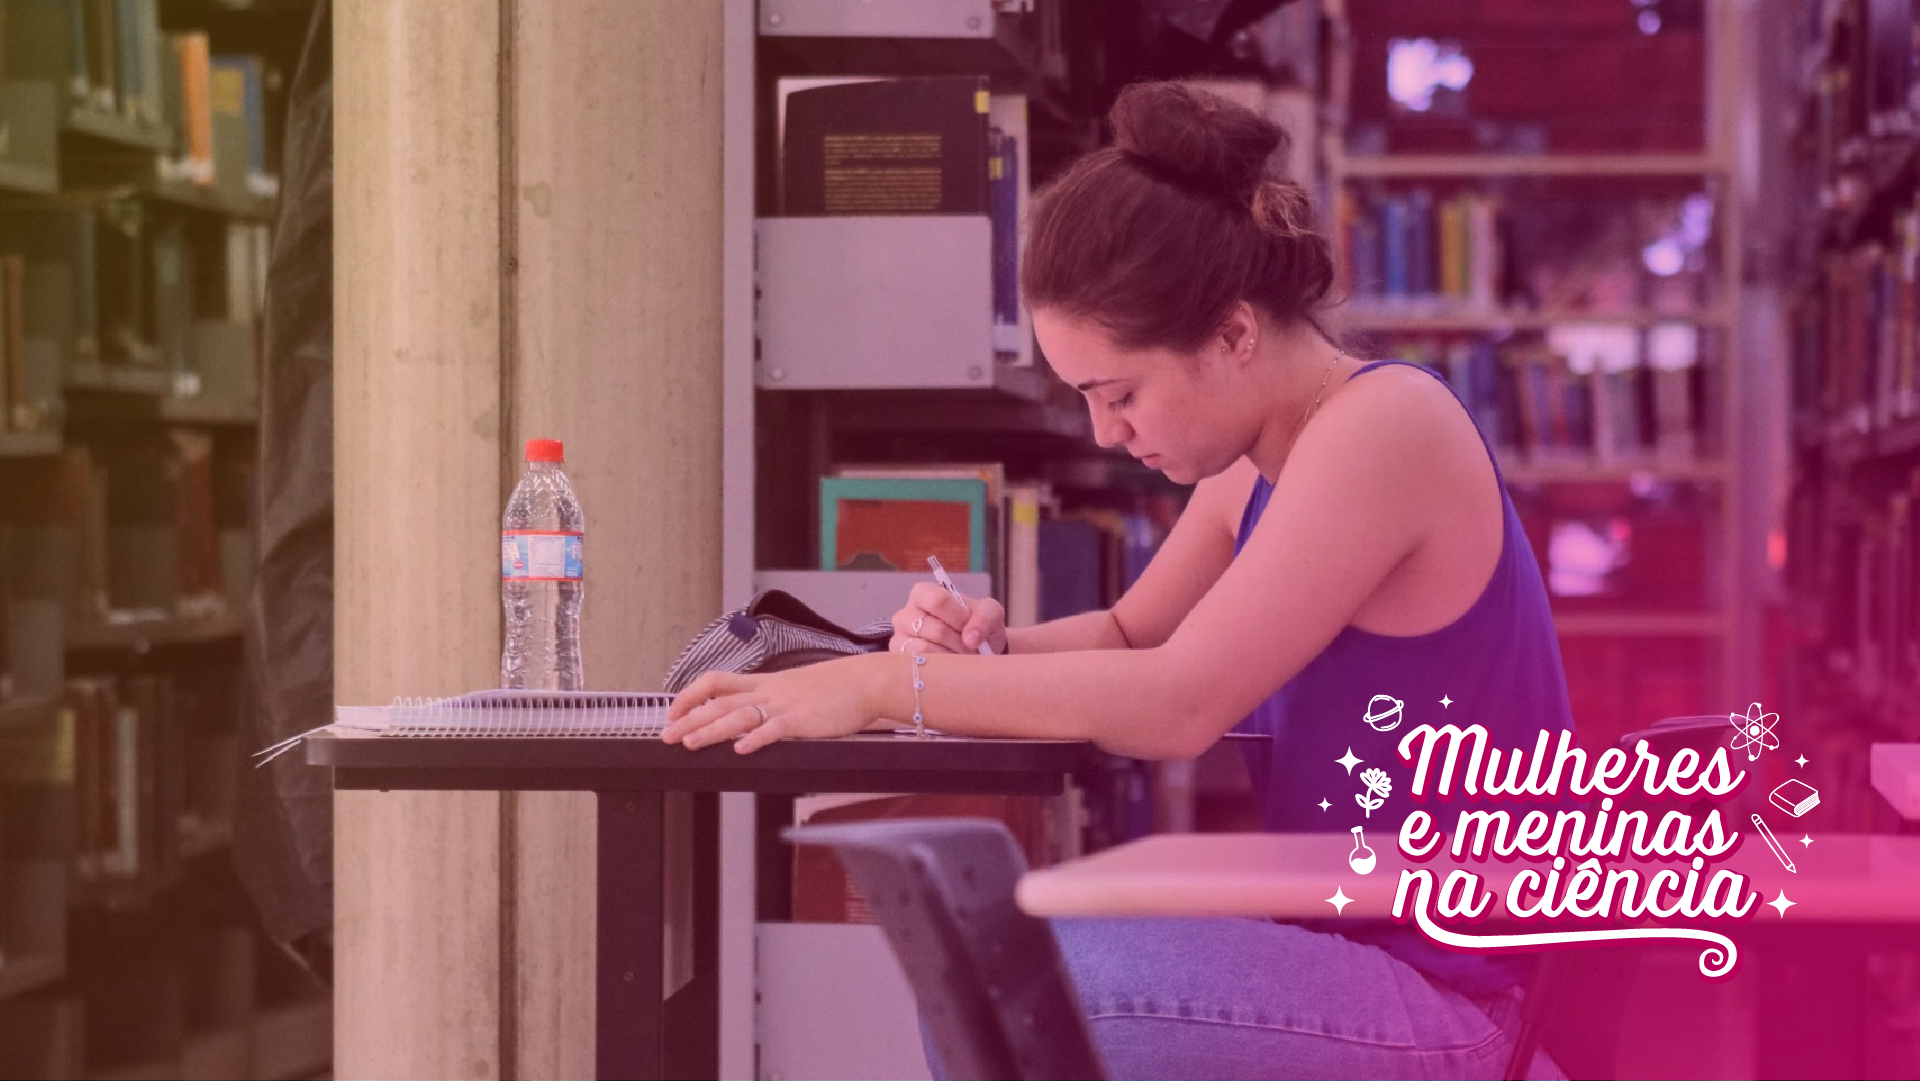 Área de estudo na Biblioteca do Campus Santa Mônica, com uma jovem estudante